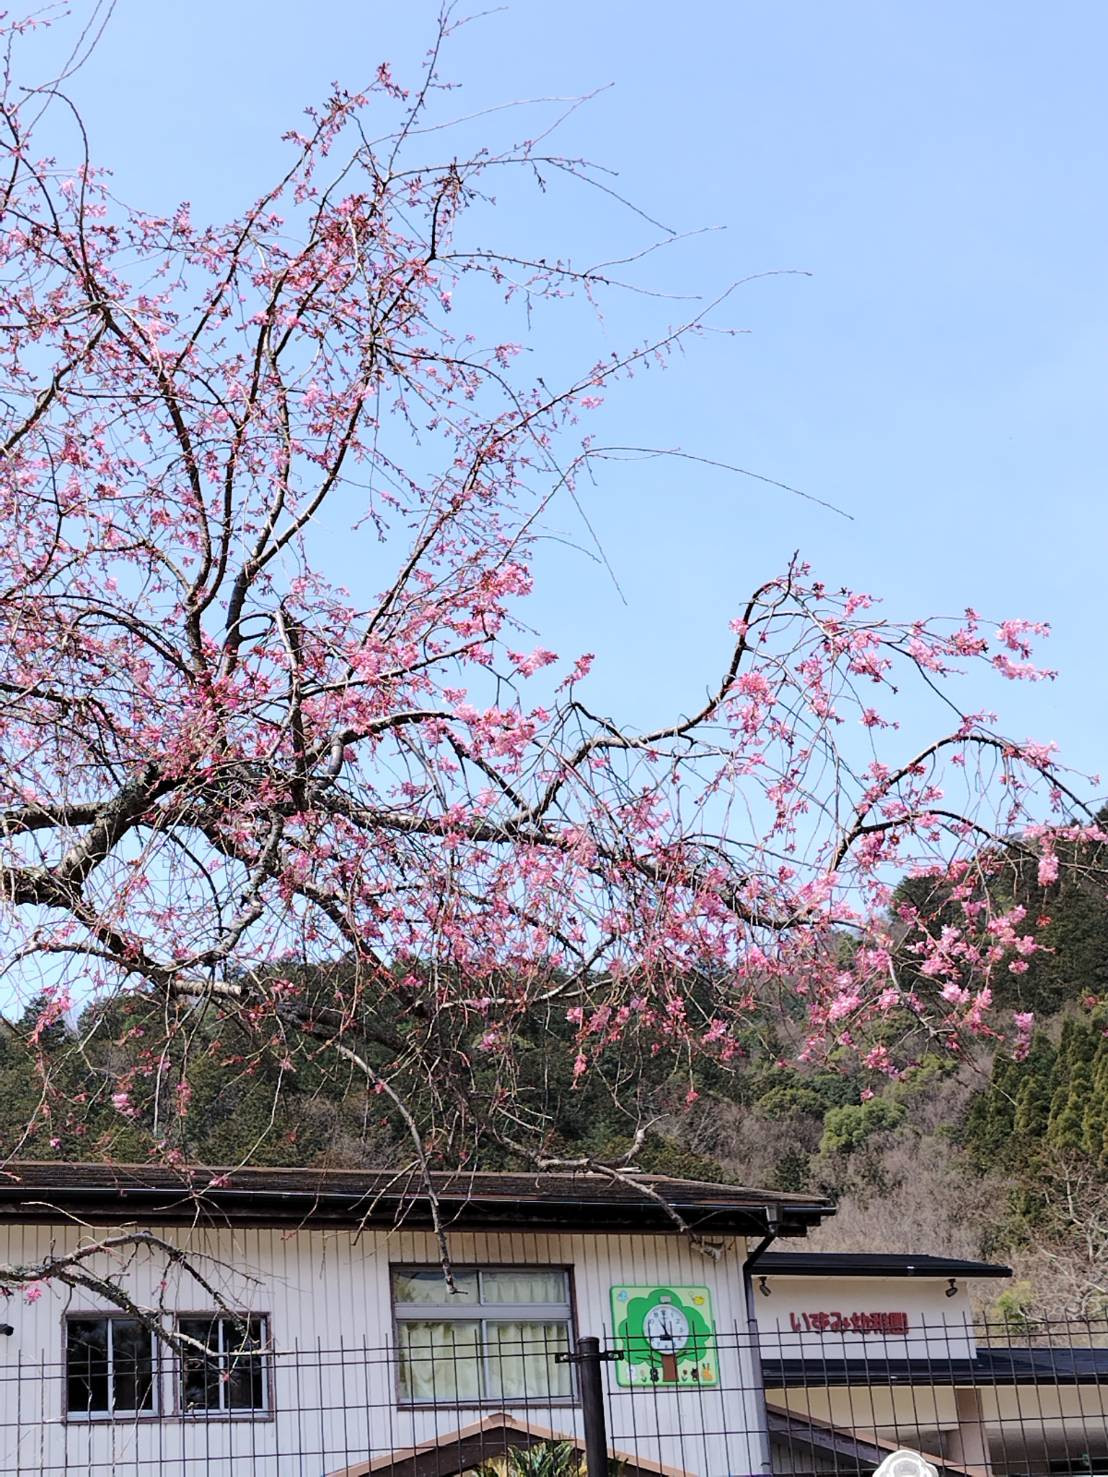 3/30疏水沿い（いずみ幼稚園の中）のしだれ桜が咲き始めました！